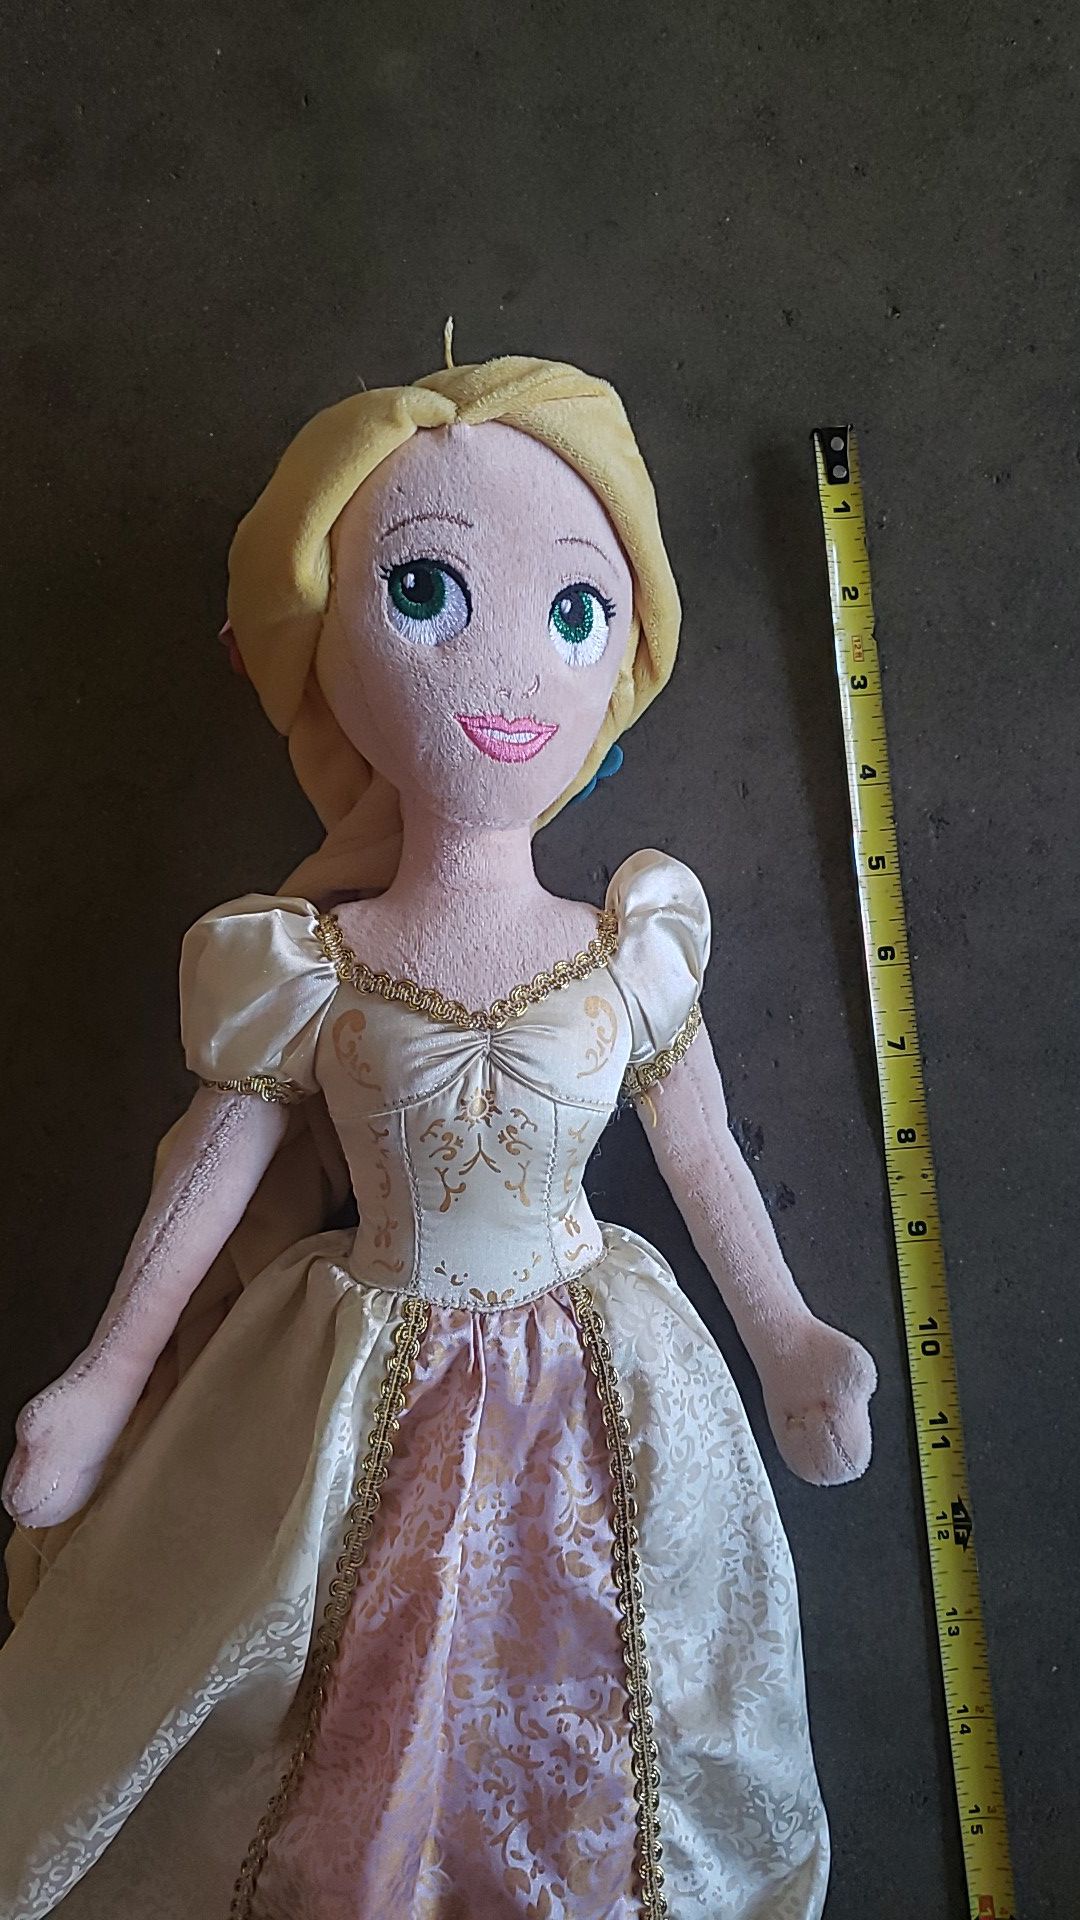 Limited edition Disney princess rapunzel wedding doll